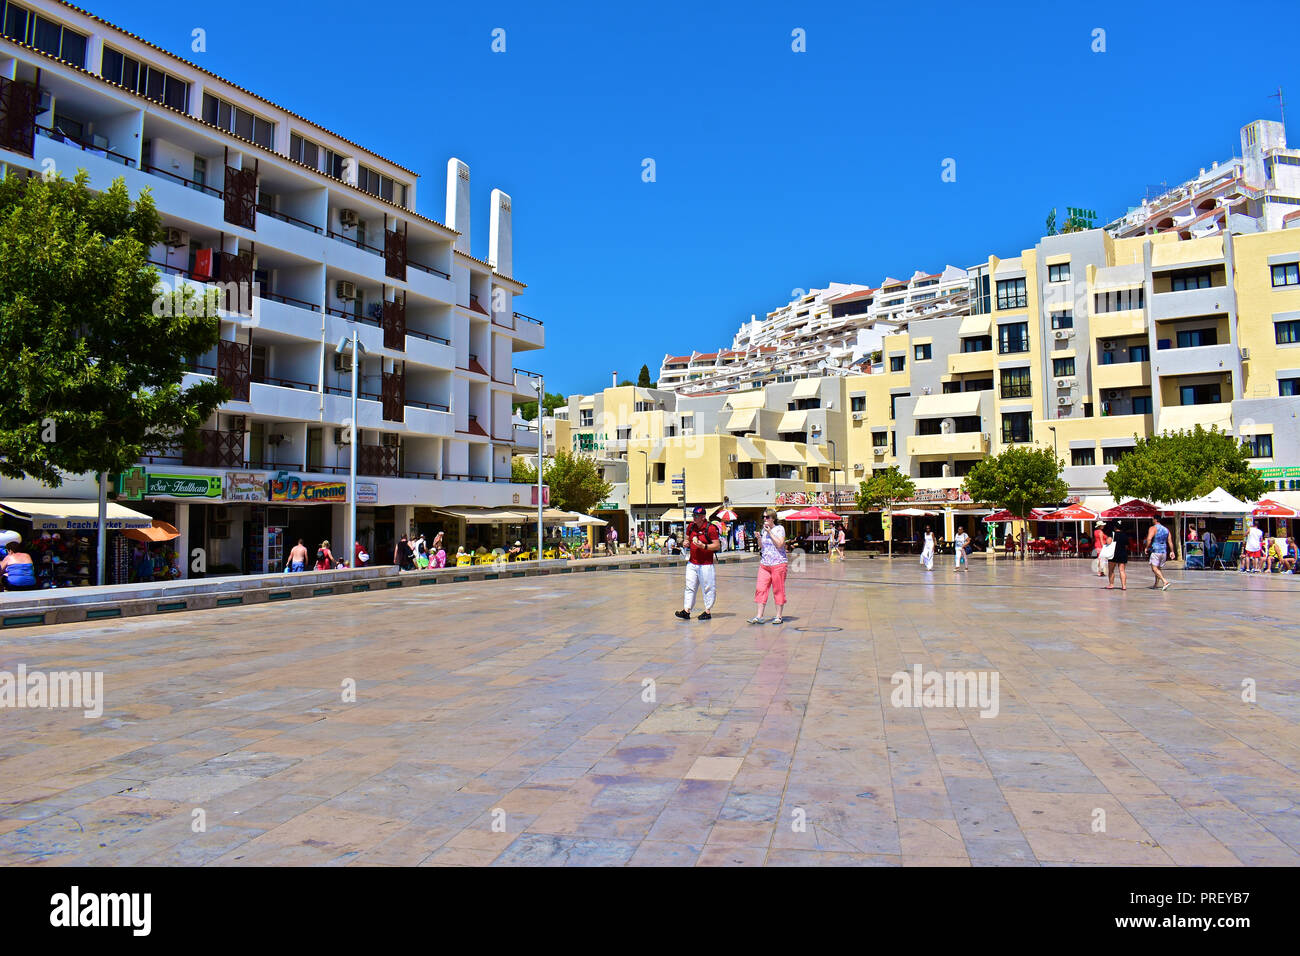 Touristen schlendern über Square dos Pesdores - einer modernen zentralen Platz im Herzen der Altstadt von Albufeira, die zum Strand führt. Algarve, Portugal Stockfoto